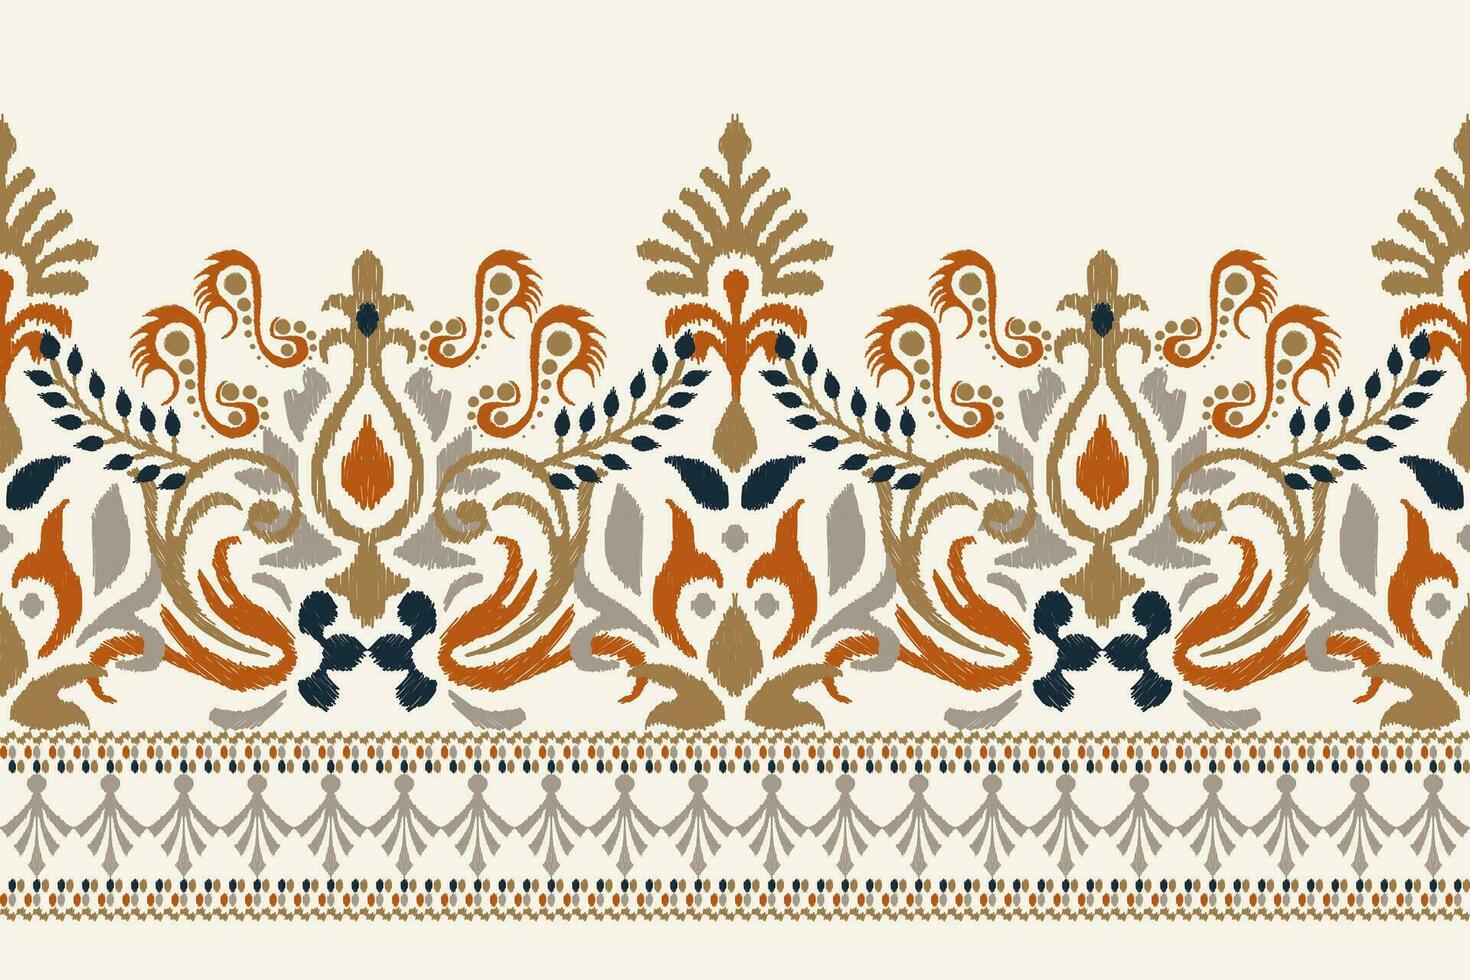 ikat blommig paisley broderi på vit bakgrund.ikat etnisk orientalisk mönster traditionell.aztec stil abstrakt vektor illustration.design för textur, tyg, kläder, inslagning, dekoration, sarong, halsduk